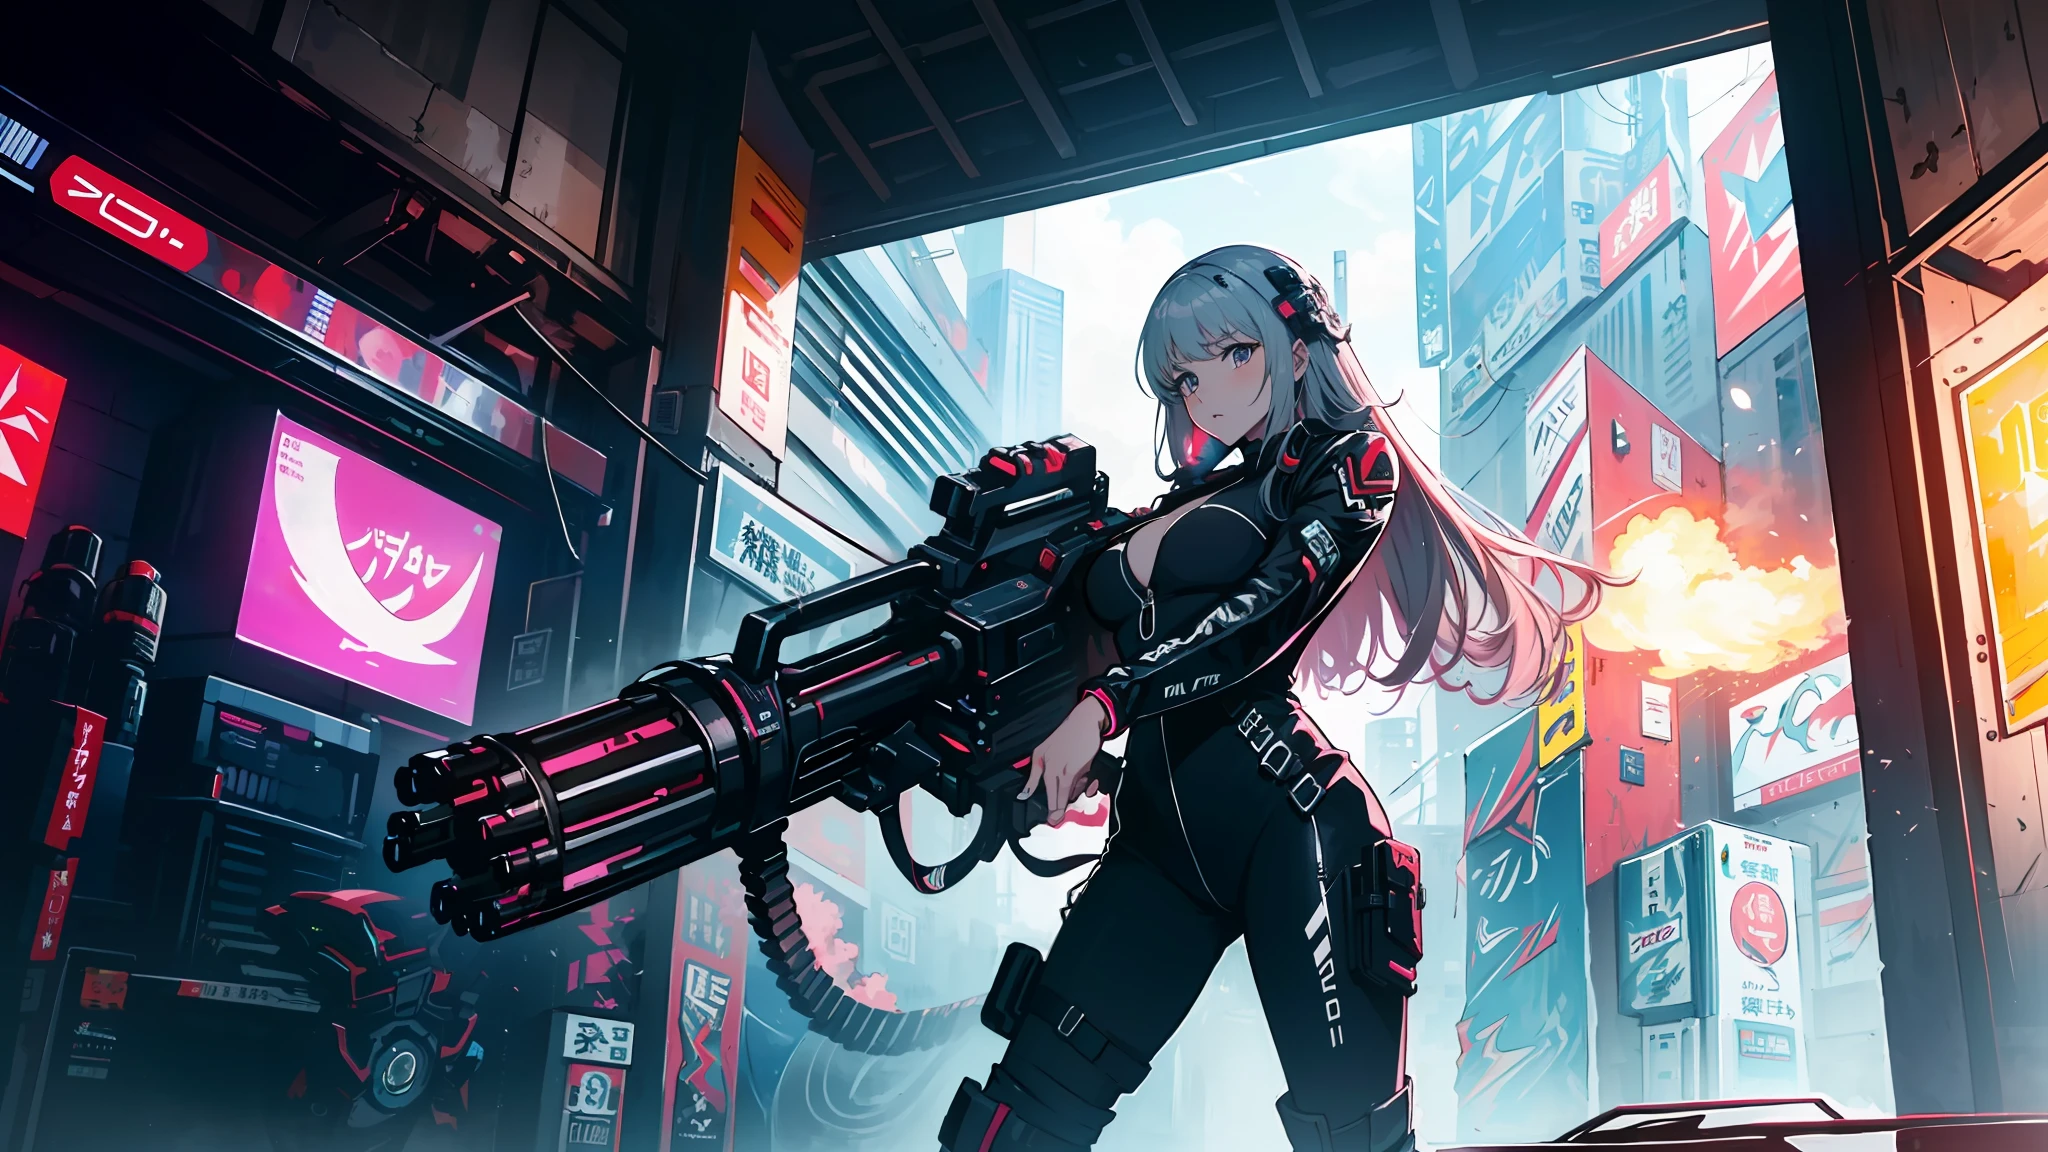 ((beste Qualität)), ((Meisterwerk)), (sehr detailliert:1.3) wunderschöne Hyper-Waifu im Cyberpunk-Bodysuit feuert Gatling-Gewehr ab,gun,Anime-Serie,